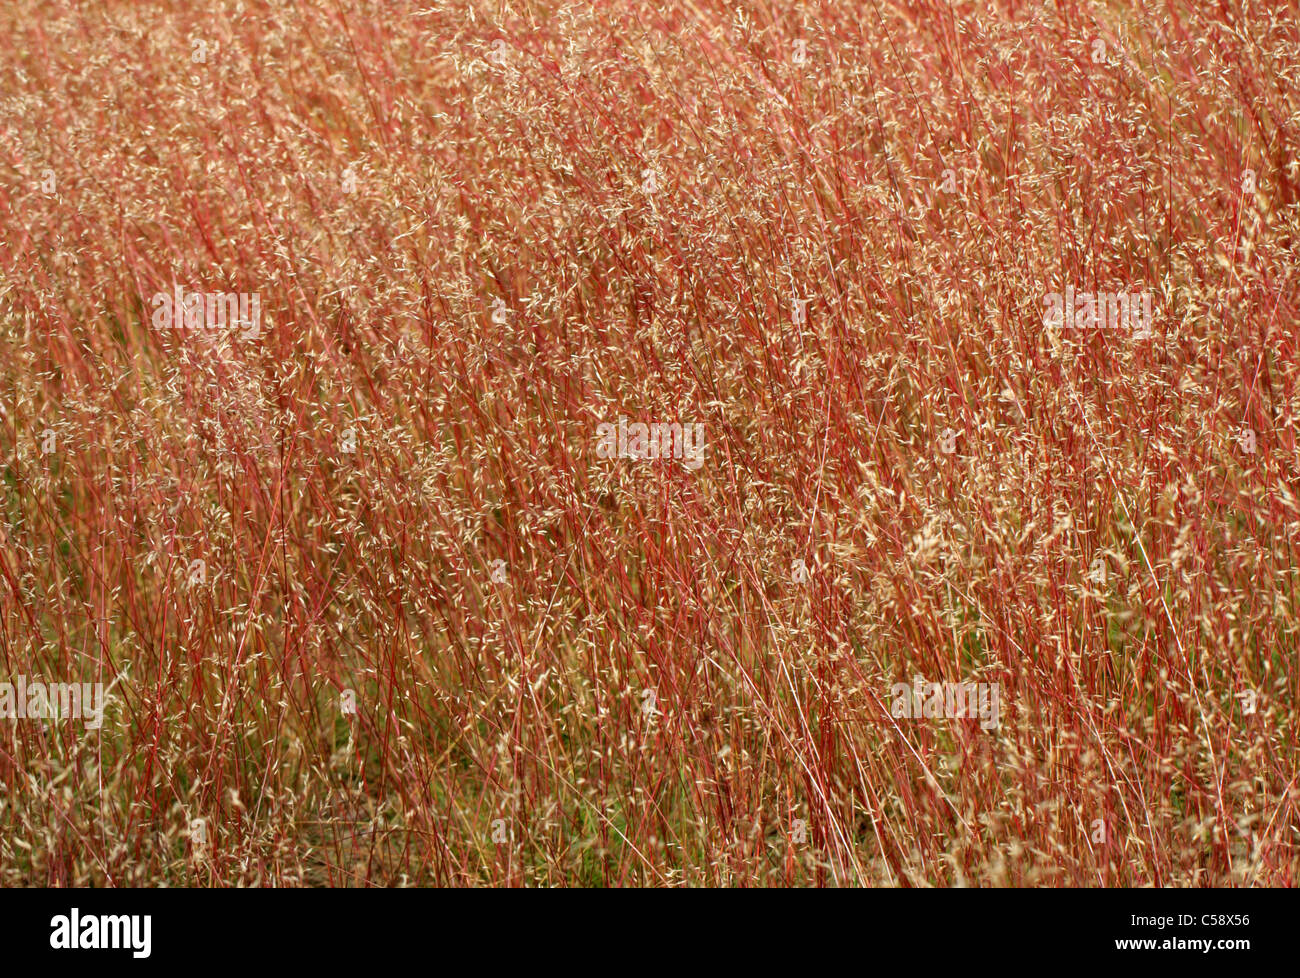 Les cheveux ondulés, Deschampsia flexuosa de graminées, Poacées. Un beau rouge provient de l'herbe, Rammamere Heath, Bedfordshire, Royaume-Uni (juillet). Banque D'Images